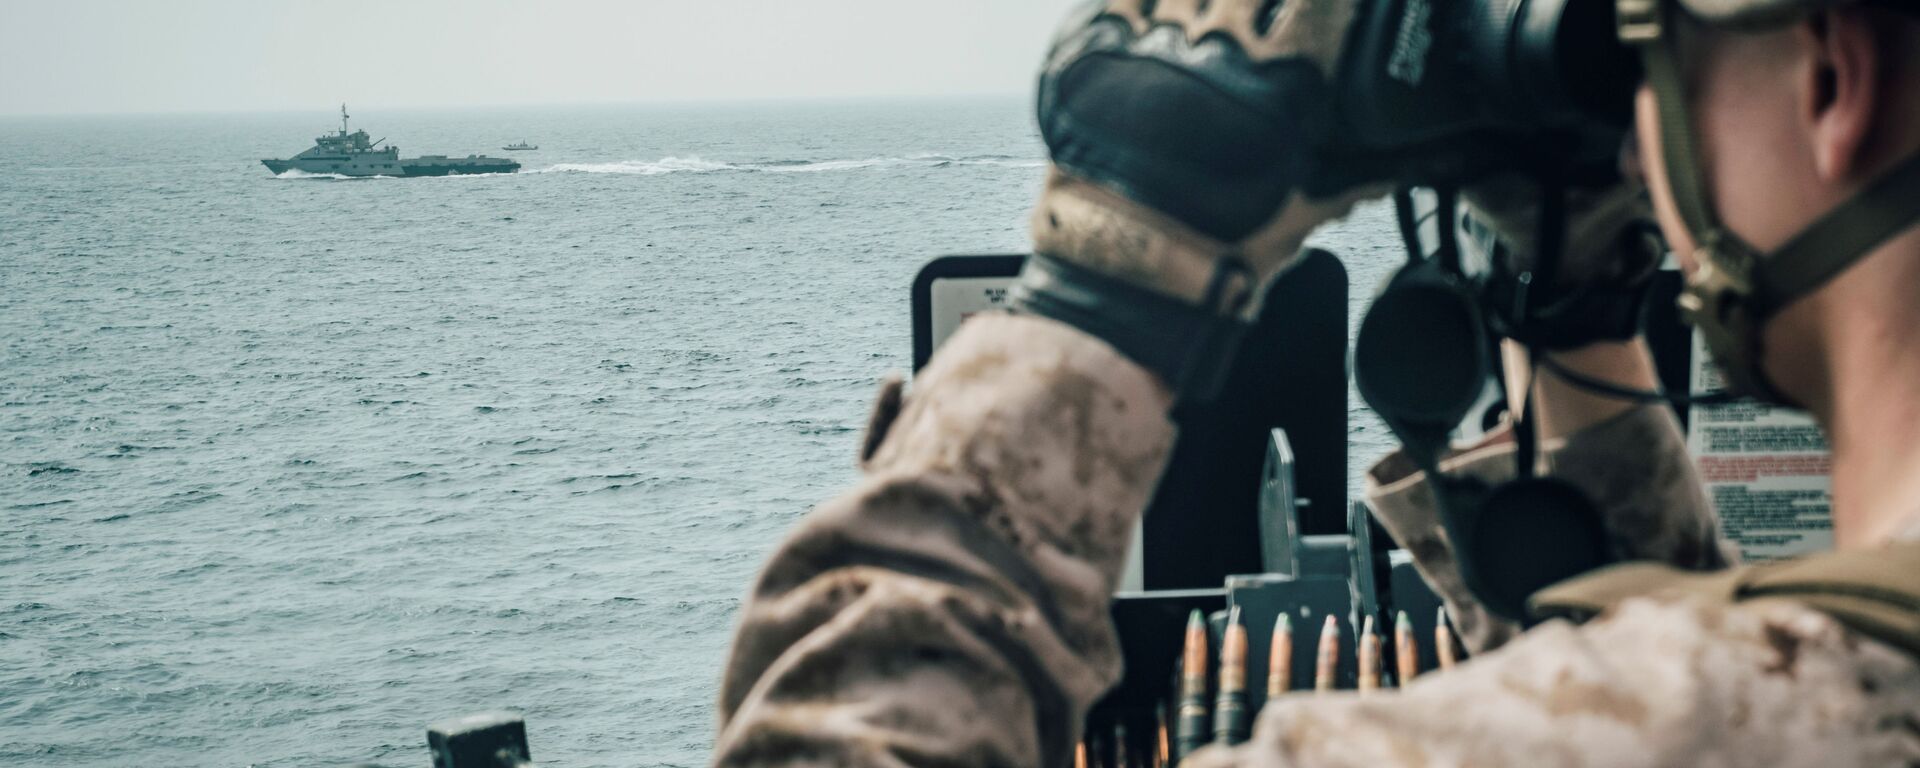 جندي من مشاة البحرية الأمريكية يراقب طائرة إيرانية هجومية من سفينة حربية أمريكية جون مورثا خلال مضيق هرمز في بحر العرب قبالة عُمان، 18 يوليو/ تموز 2019 - سبوتنيك عربي, 1920, 30.07.2021